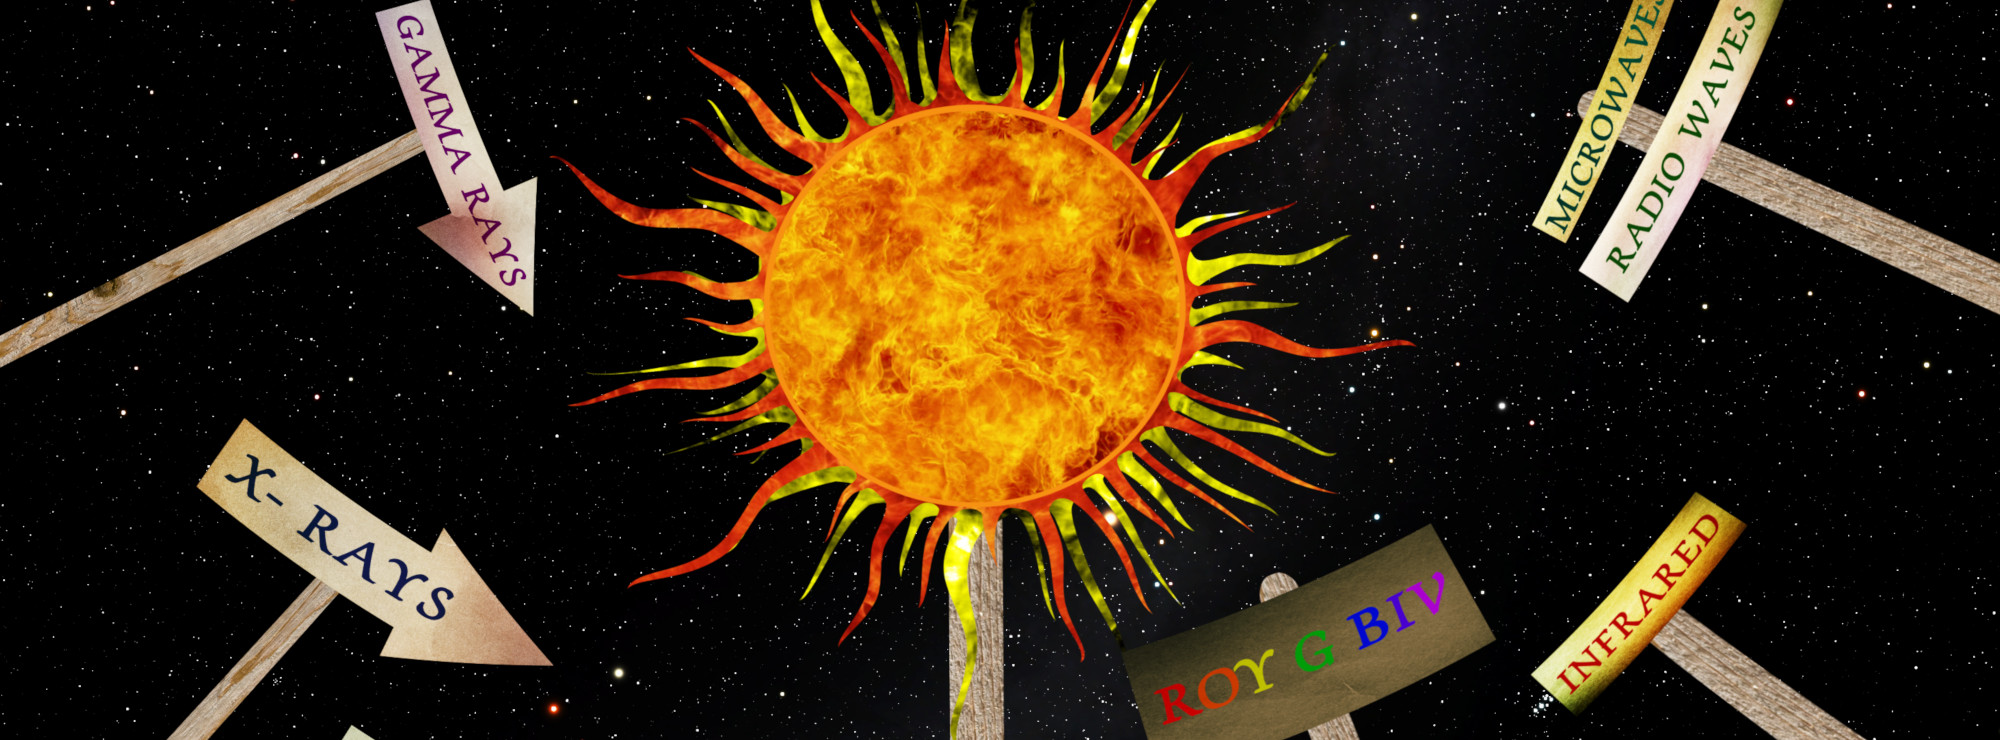 Vår närmaste stjärna - Solen